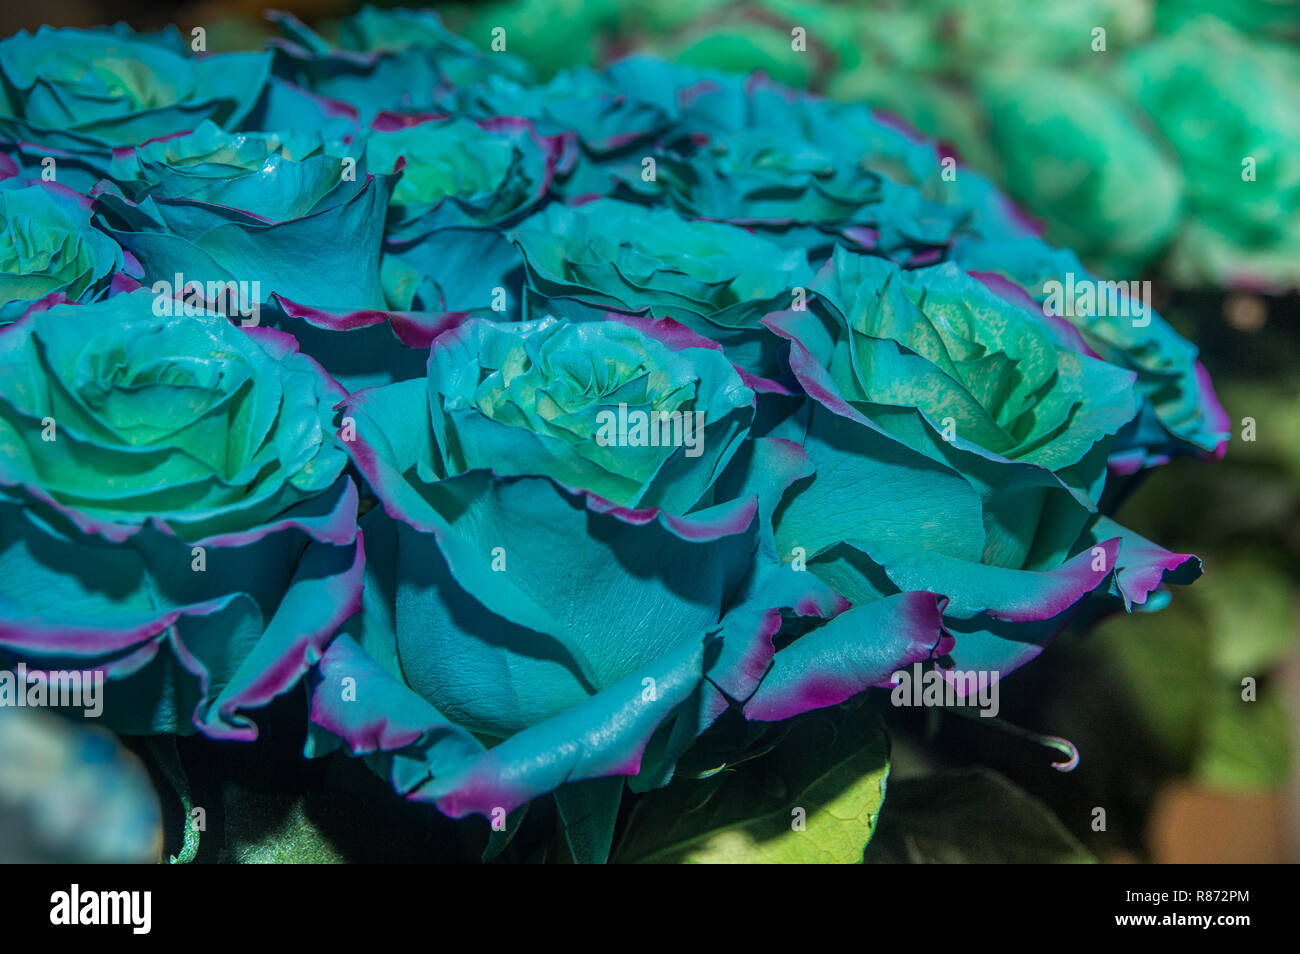 Close up of selective focus de bouquet de fleurs bicolores avec la couleur bleu et de parc d', certains sont génétiquement amélioré ou habituellement sont peints Banque D'Images